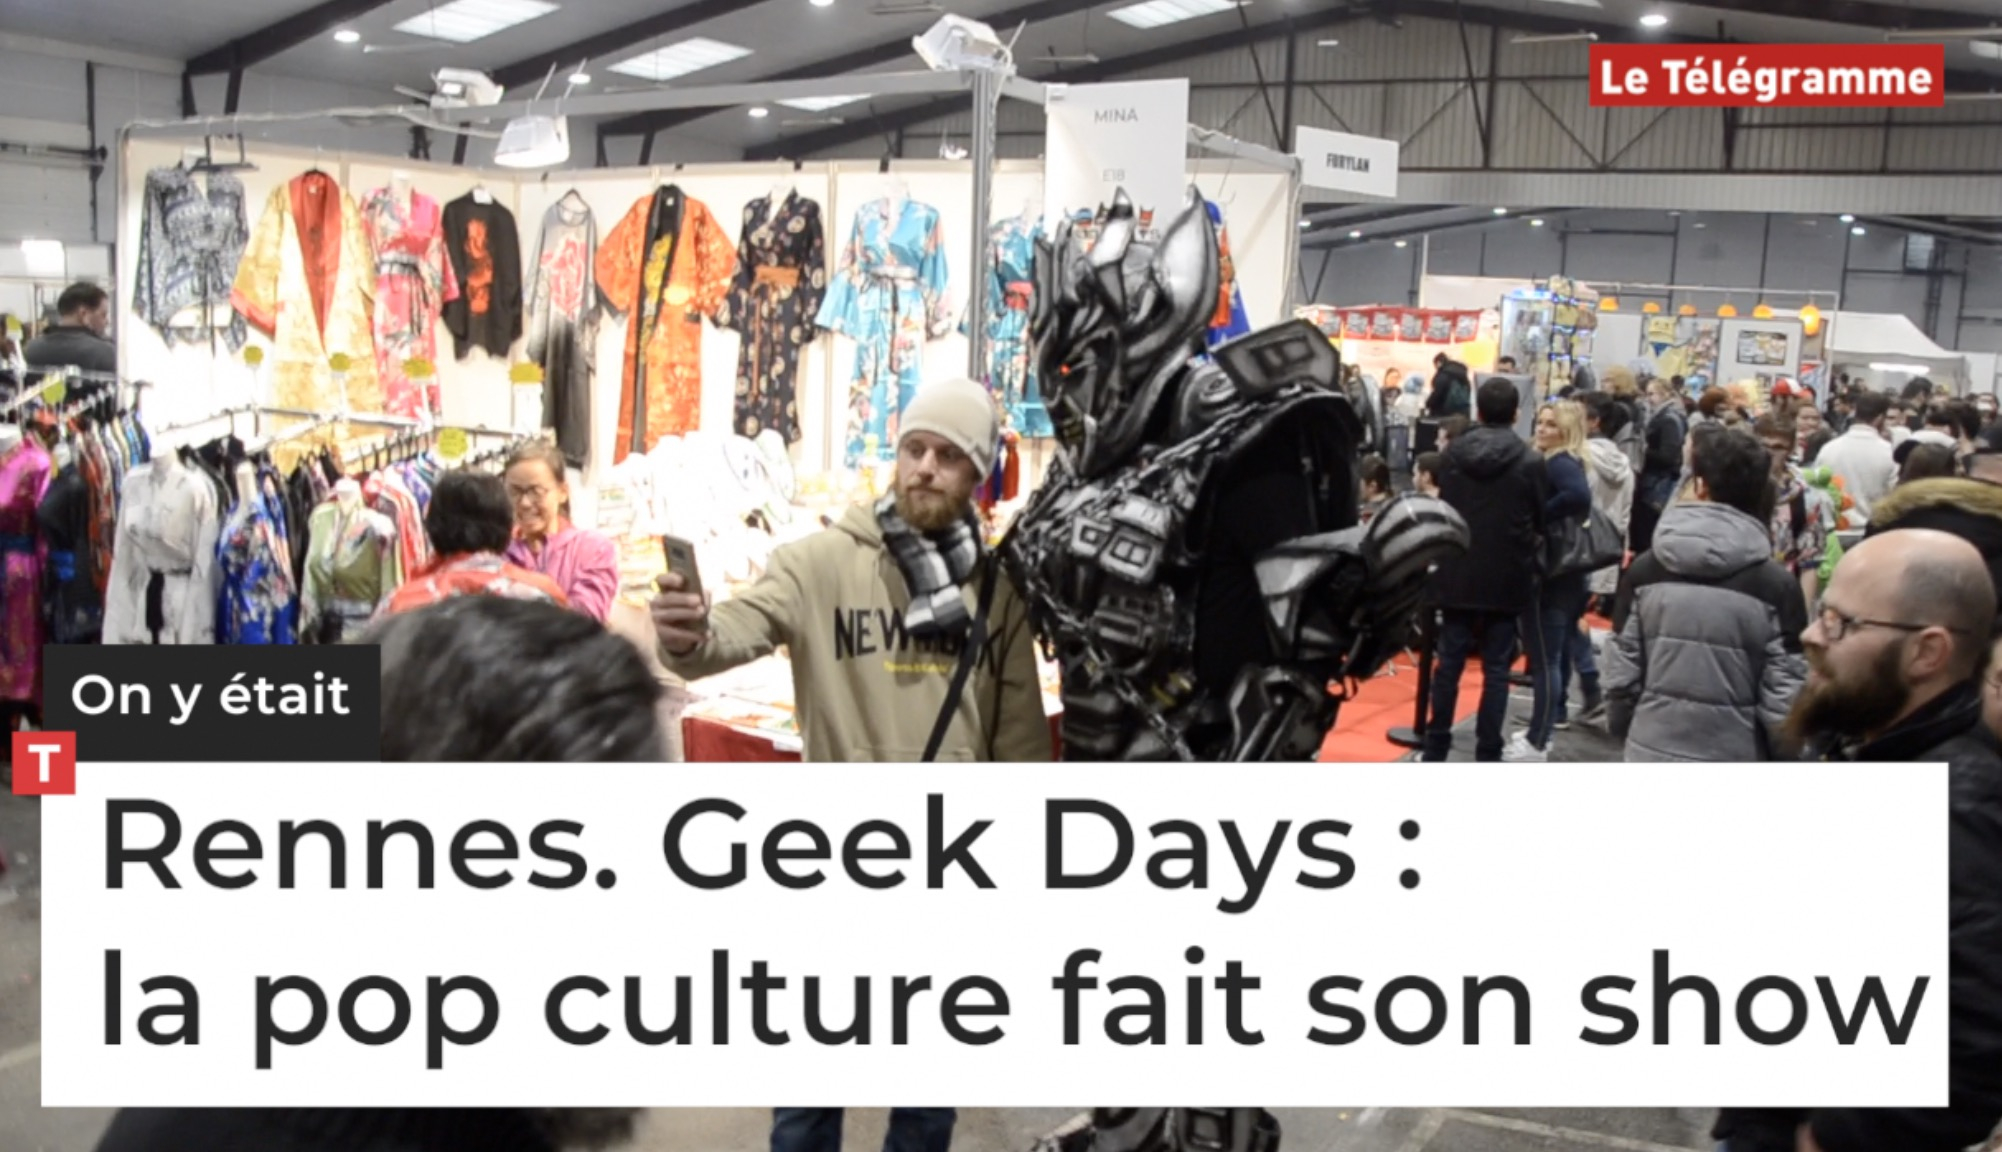 Rennes. Geek Days : la pop culture fait son show  (Le Télégramme)